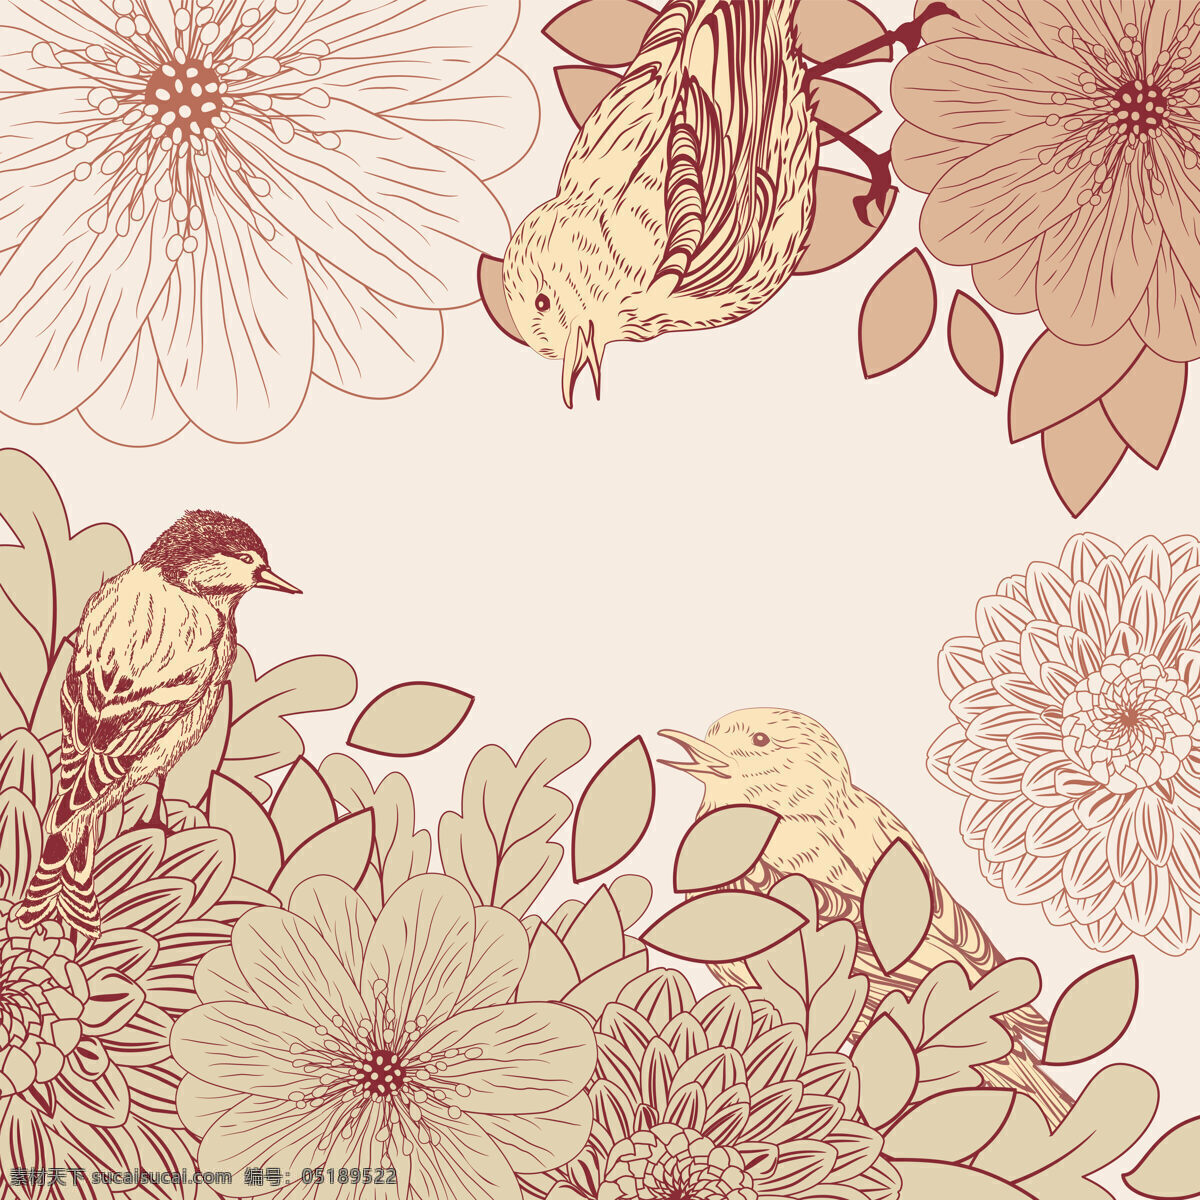 清新 肉粉 色调 小鸟 壁纸 图案 装饰设计 壁纸图案 花朵 菊花